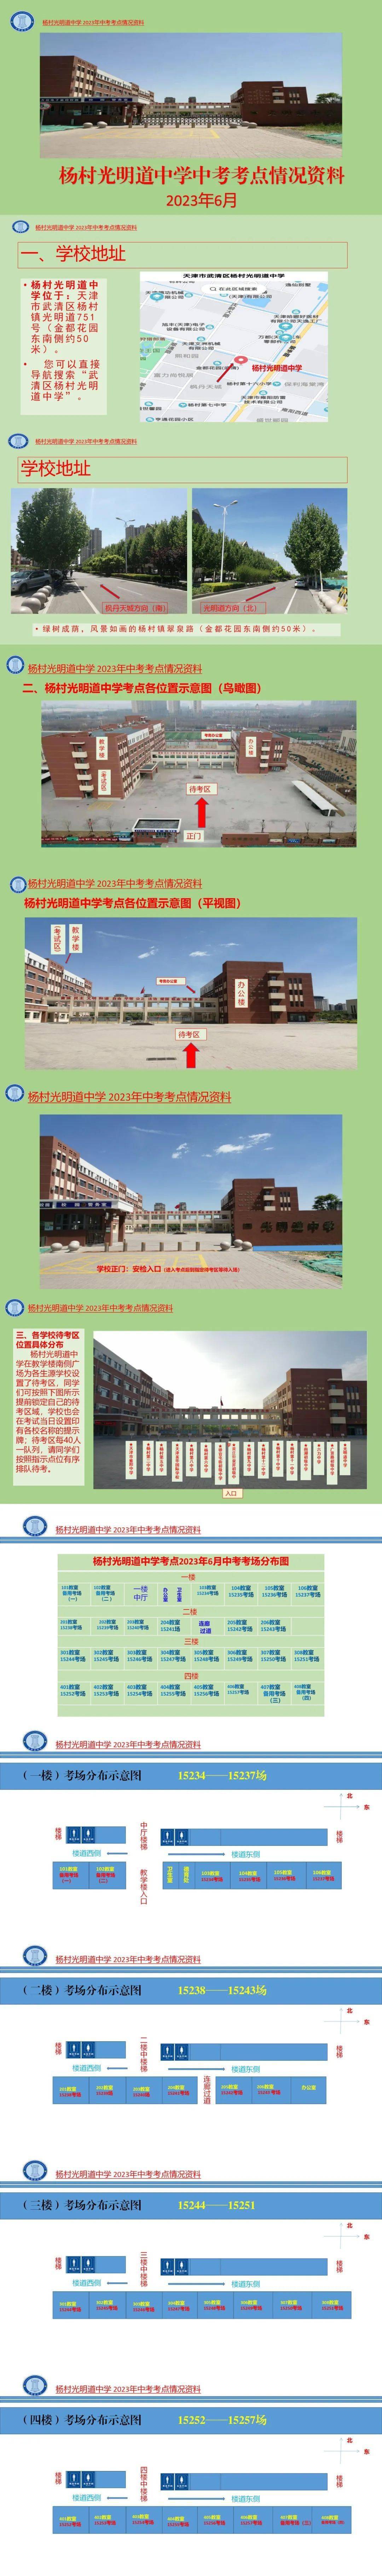 杨村第六中学图片